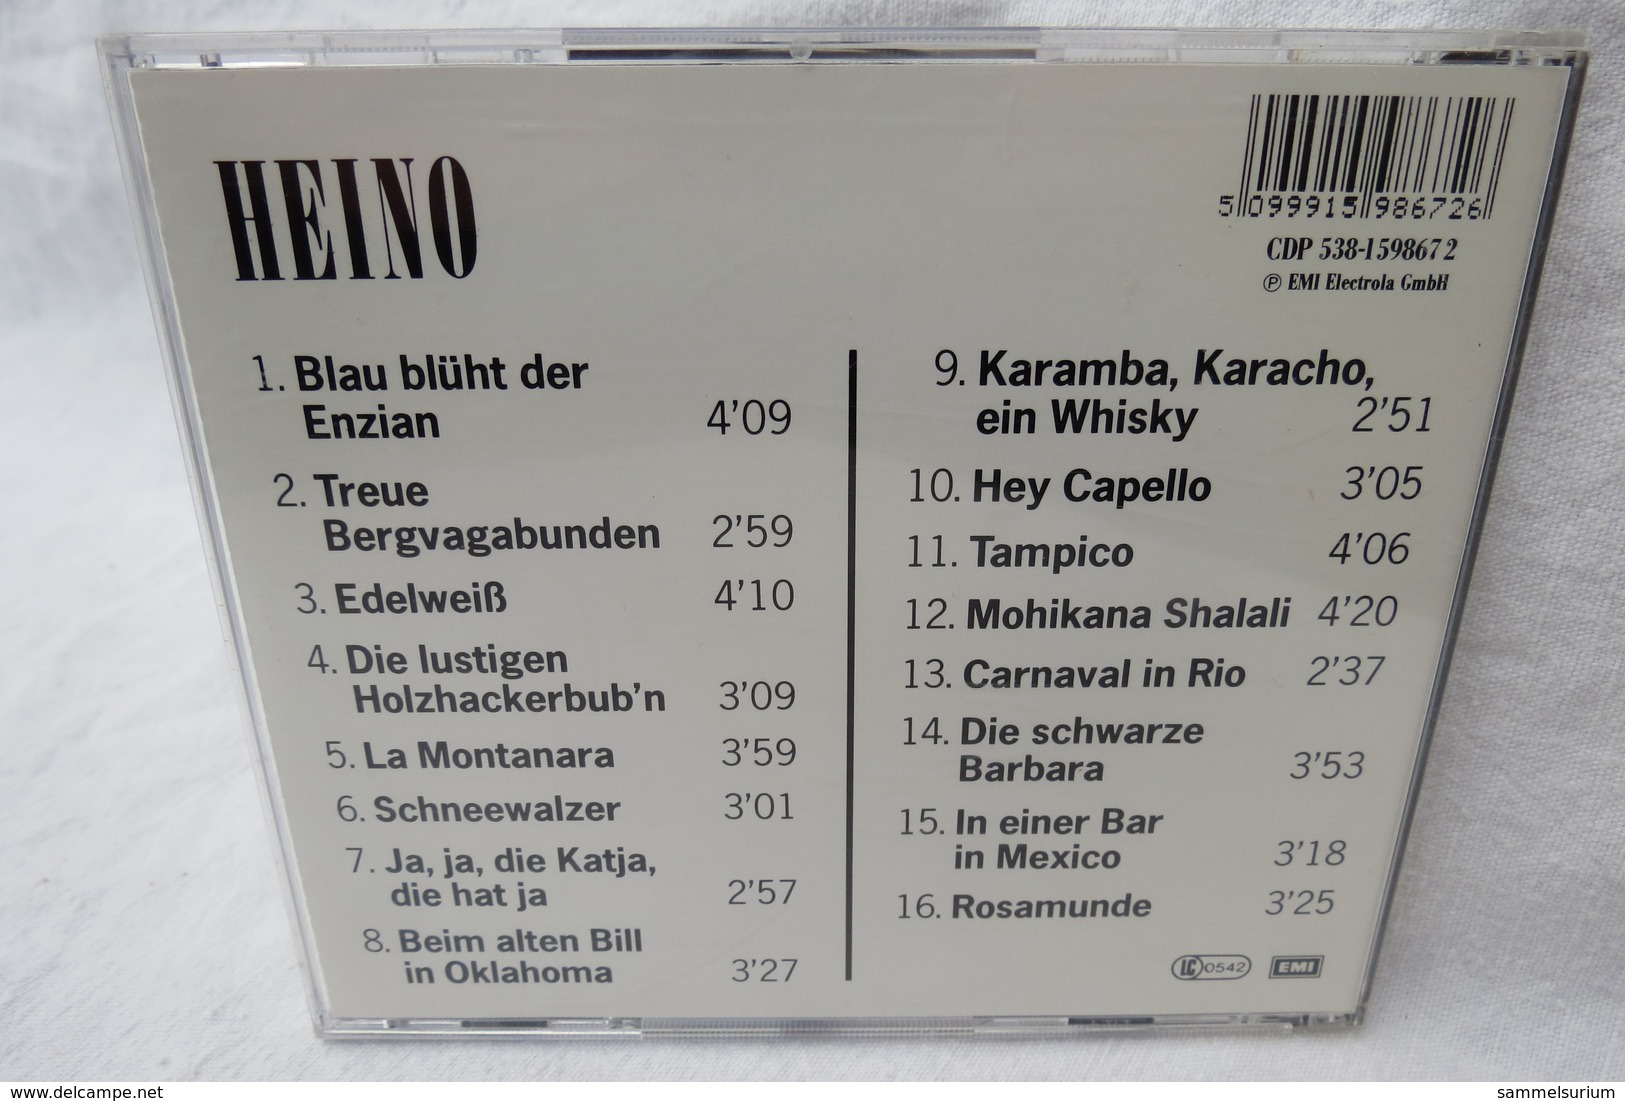 CD "Heino" Gold Collection - Sonstige - Deutsche Musik